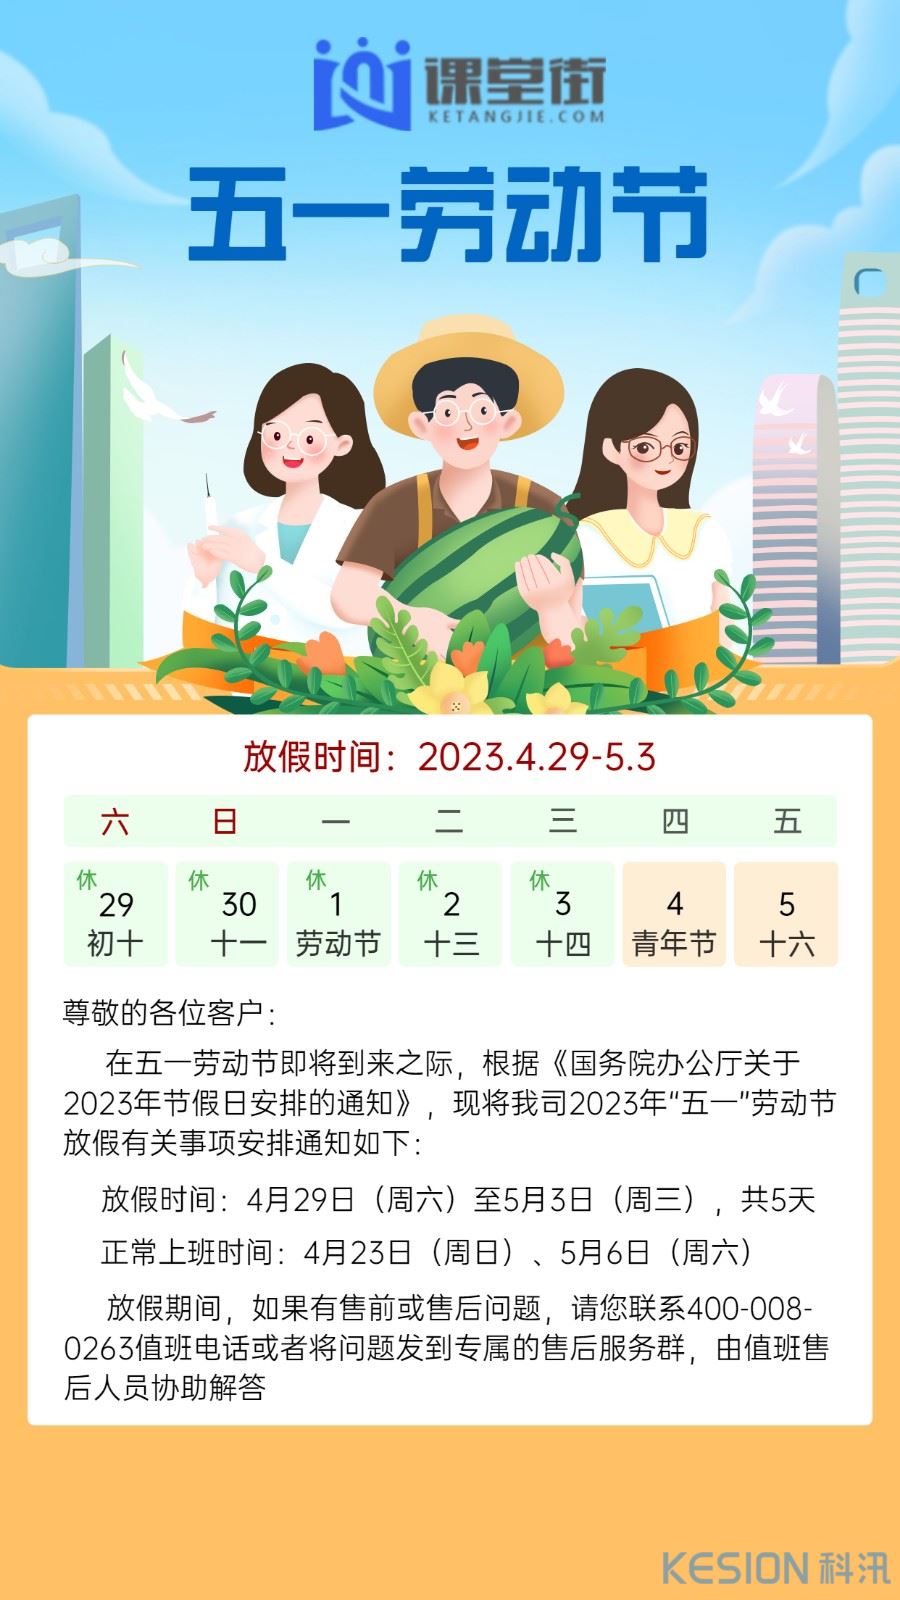 劳动节金融保险银行放假通知公告插画海报 (1)(1).jpg